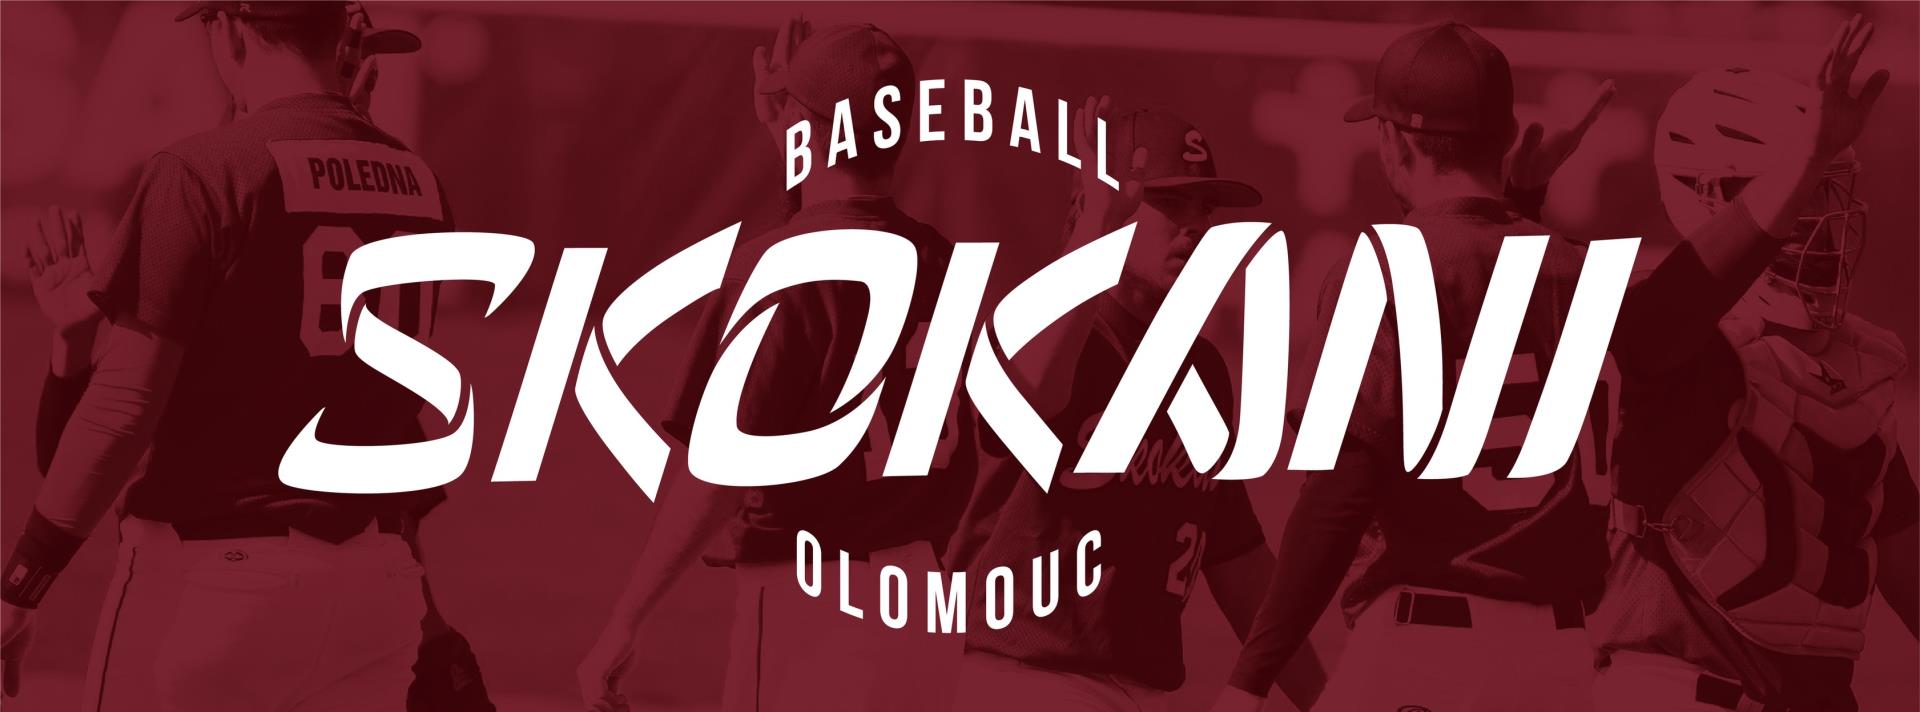 Skokani Olomouc Baseball Club